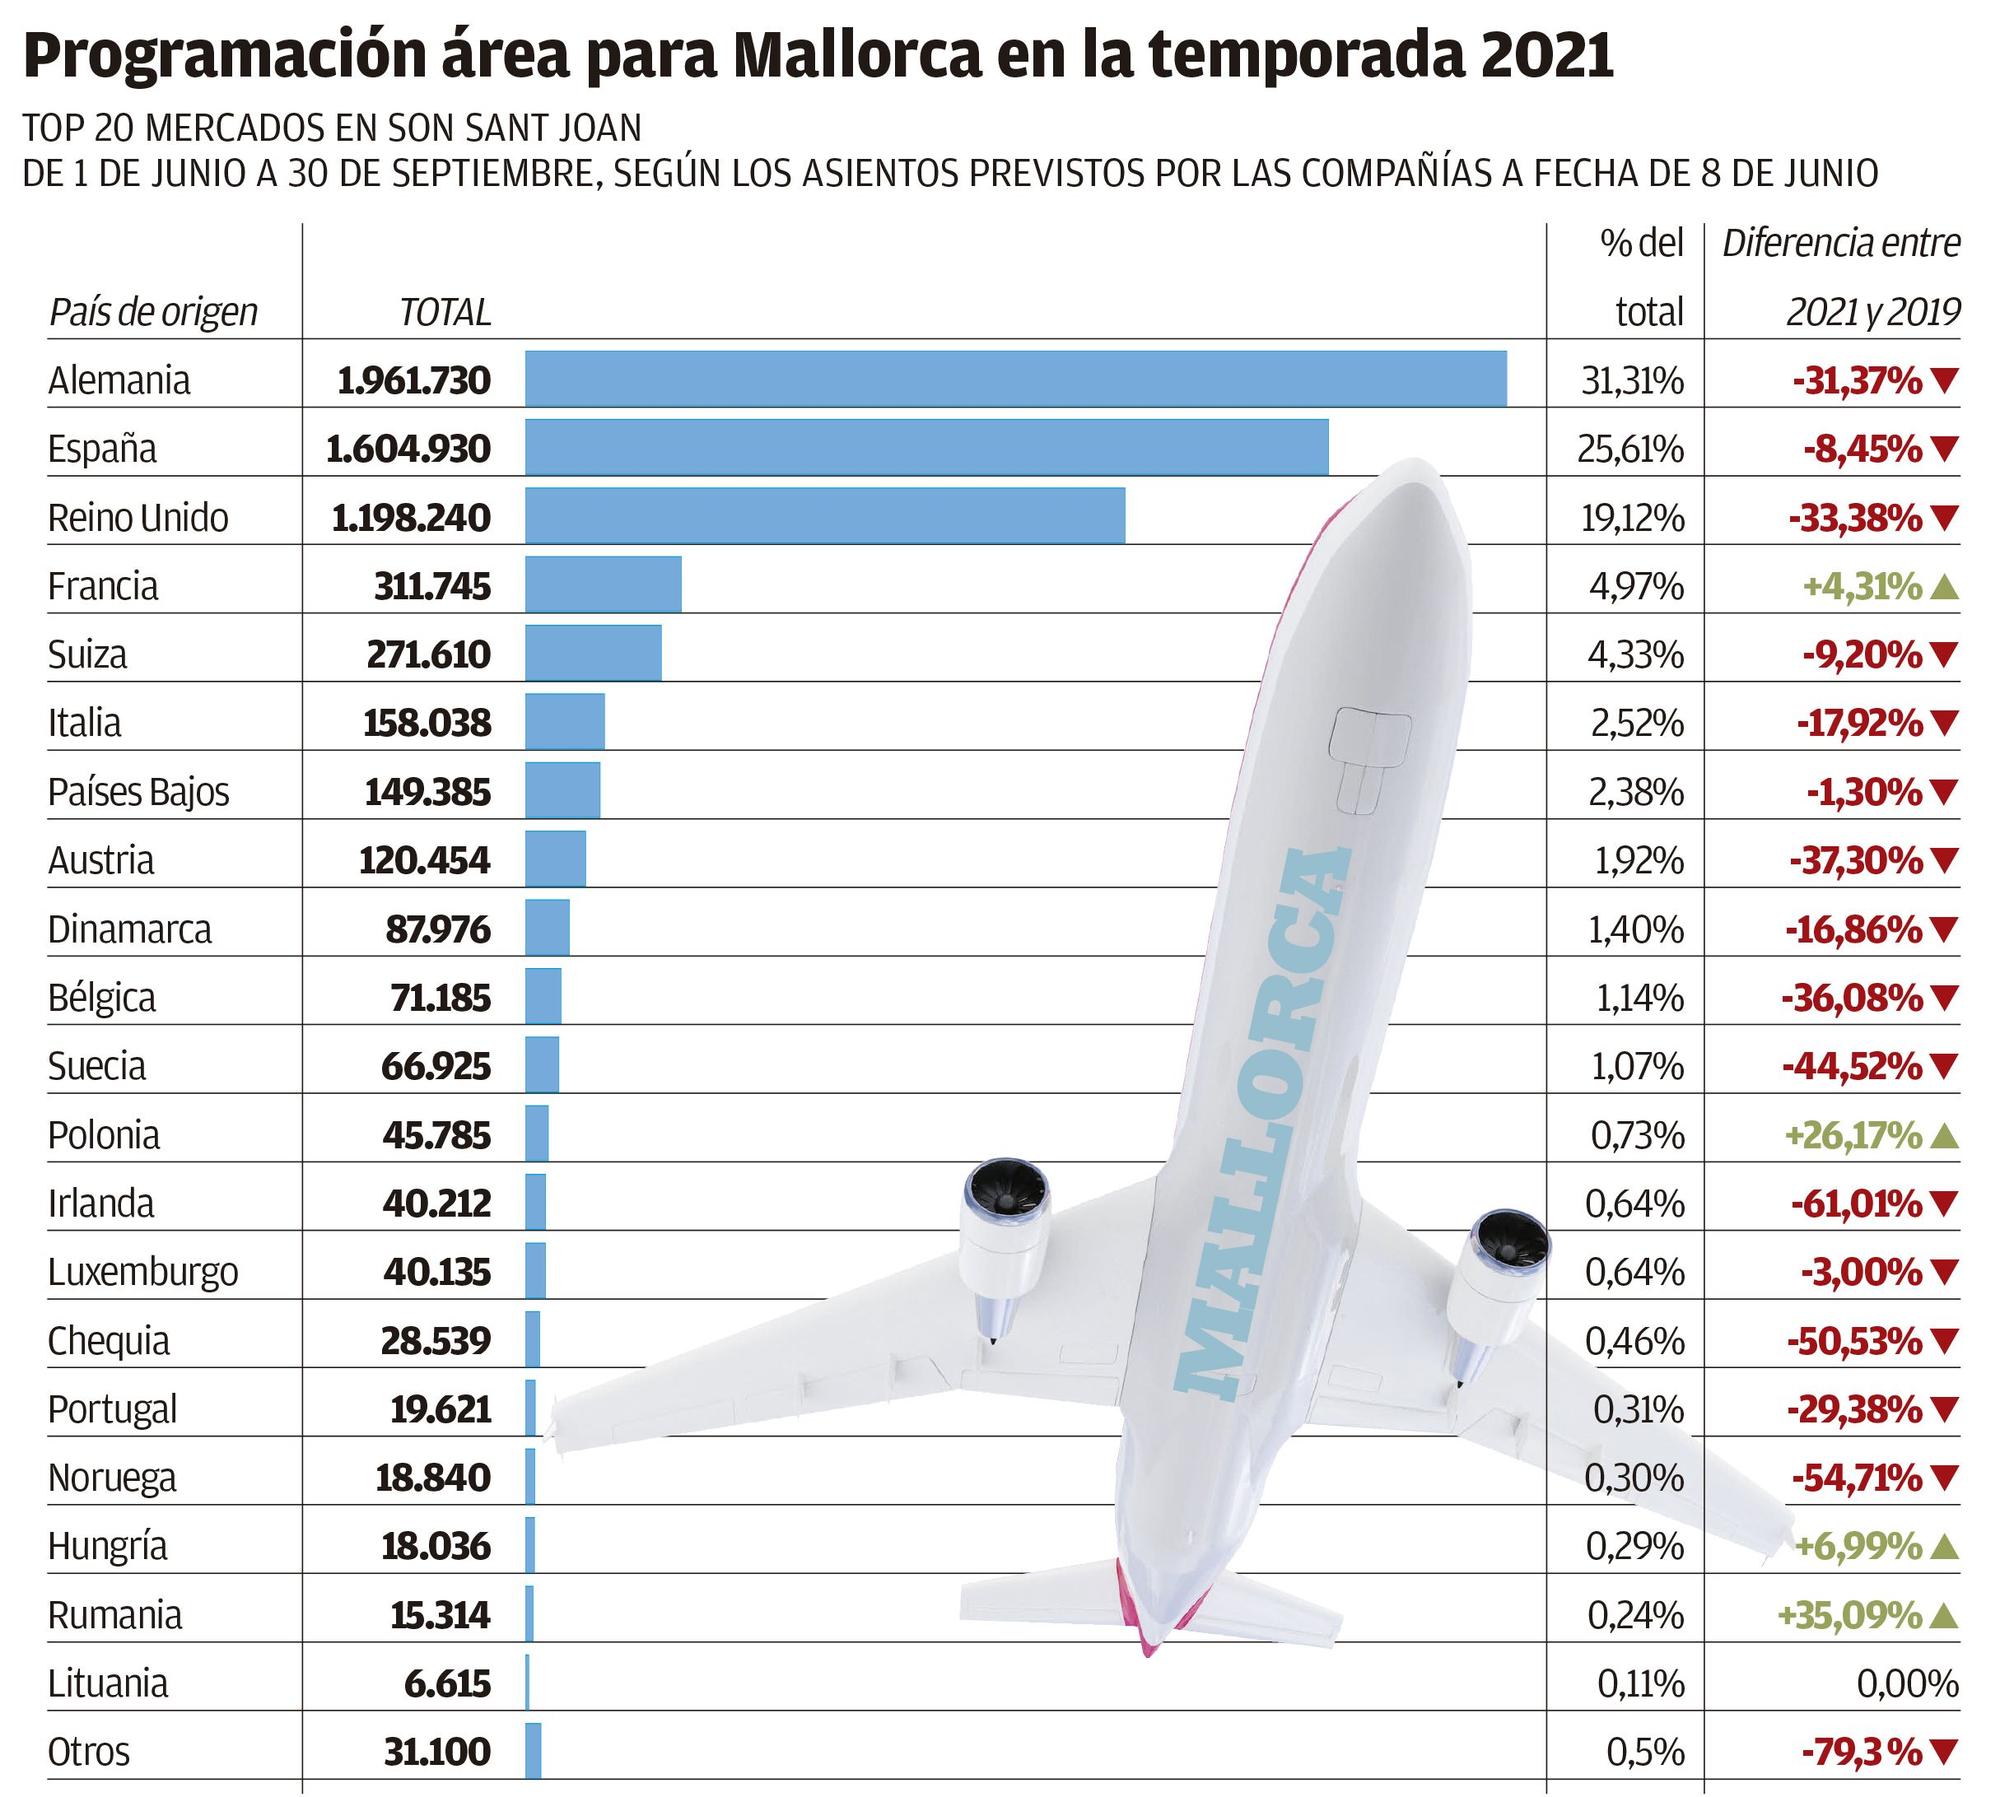 Programación aérea en Son Sant Joan temporada 2021